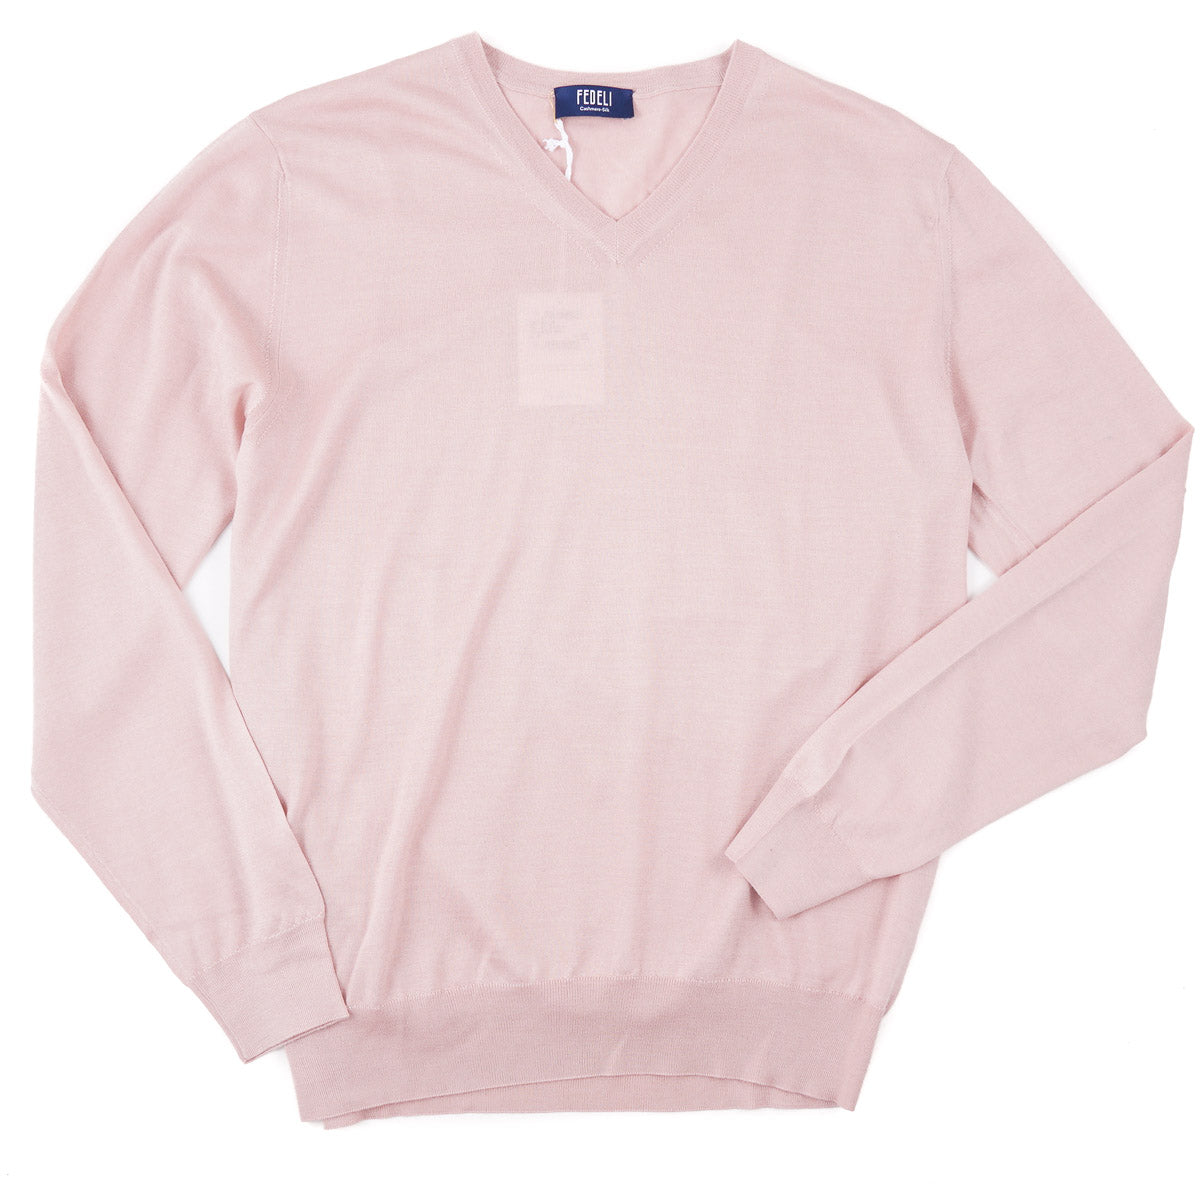 Fedeli Superfine Cashmere-Silk Sweater - Top Shelf Apparel